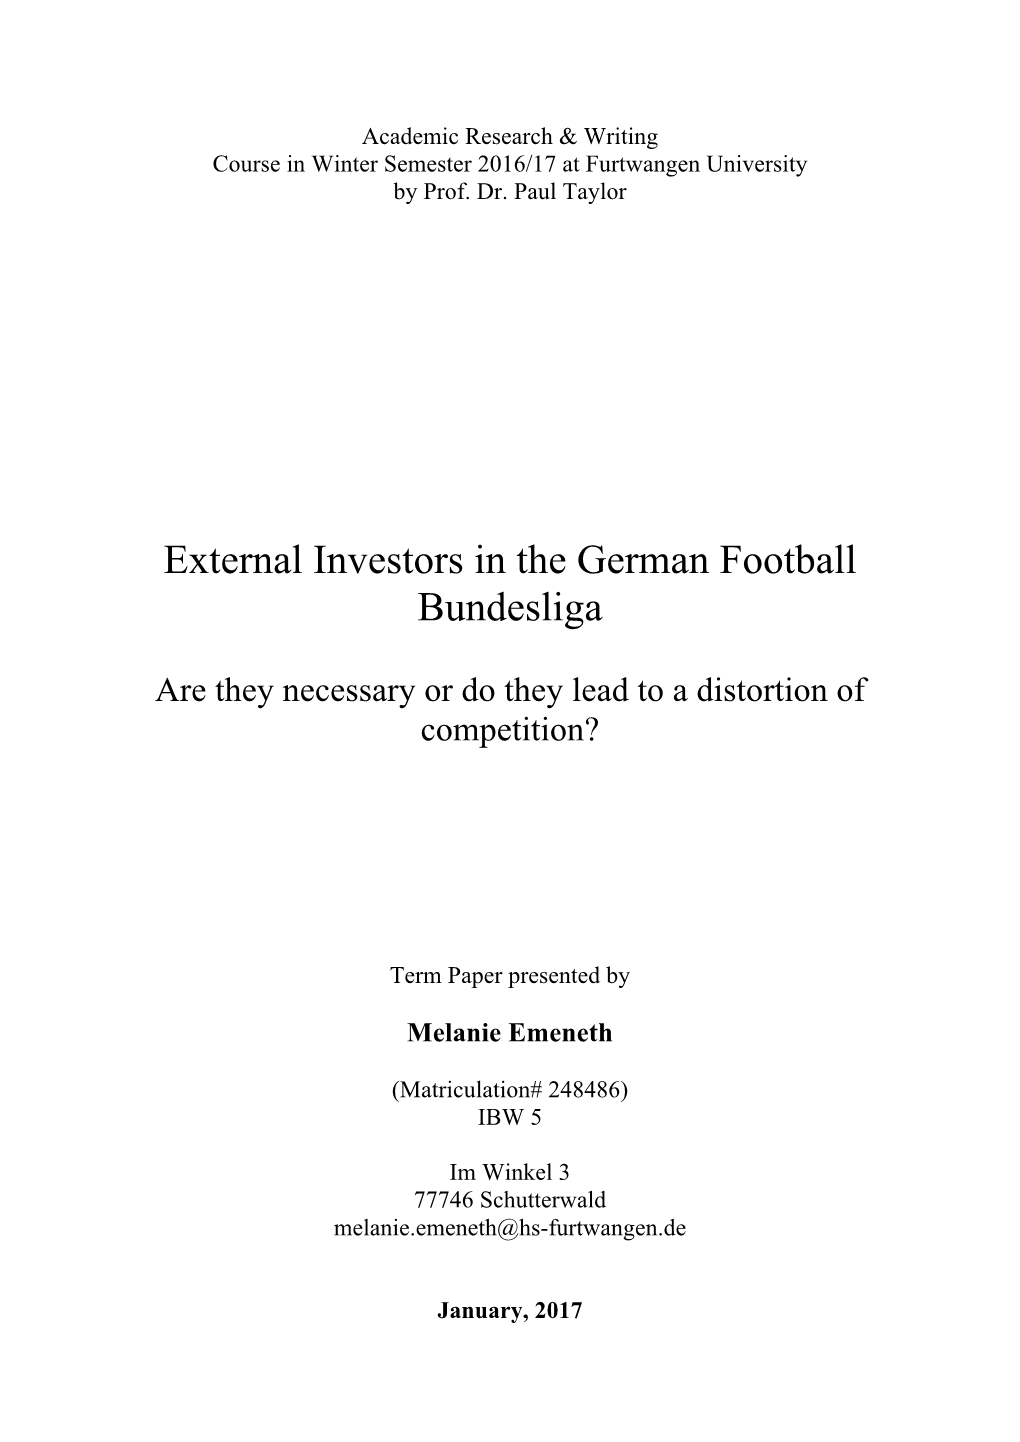 External Investors in the German Football Bundesliga